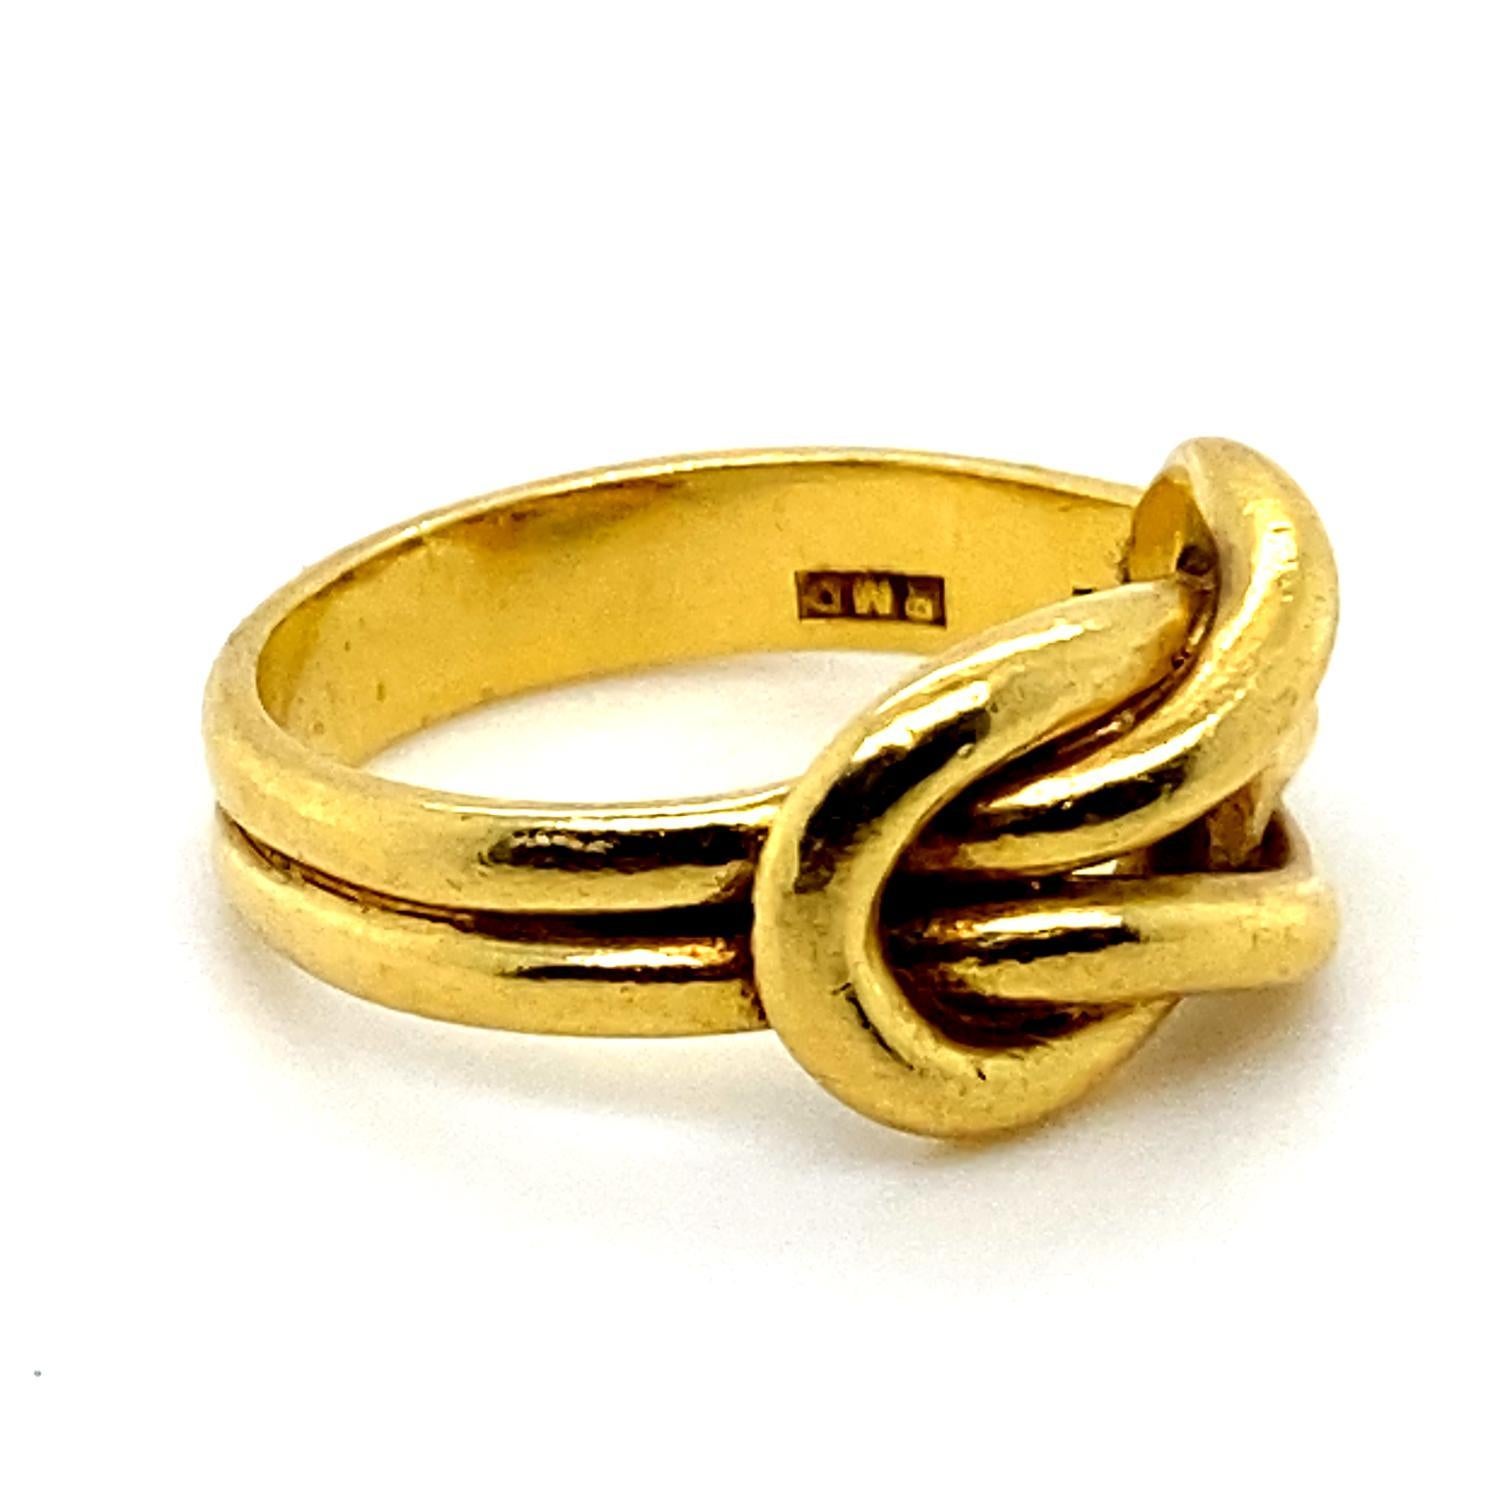 Ring Lovers Knot aus 18 Karat Gelbgold.

Dieser elegante und schlichte Ring ist in Form eines Liebesknotens aus blank poliertem Gelbgold gestaltet.

Der Knoten der Liebenden steht für die dauerhafte und unzerstörbare Verbindung zwischen zwei